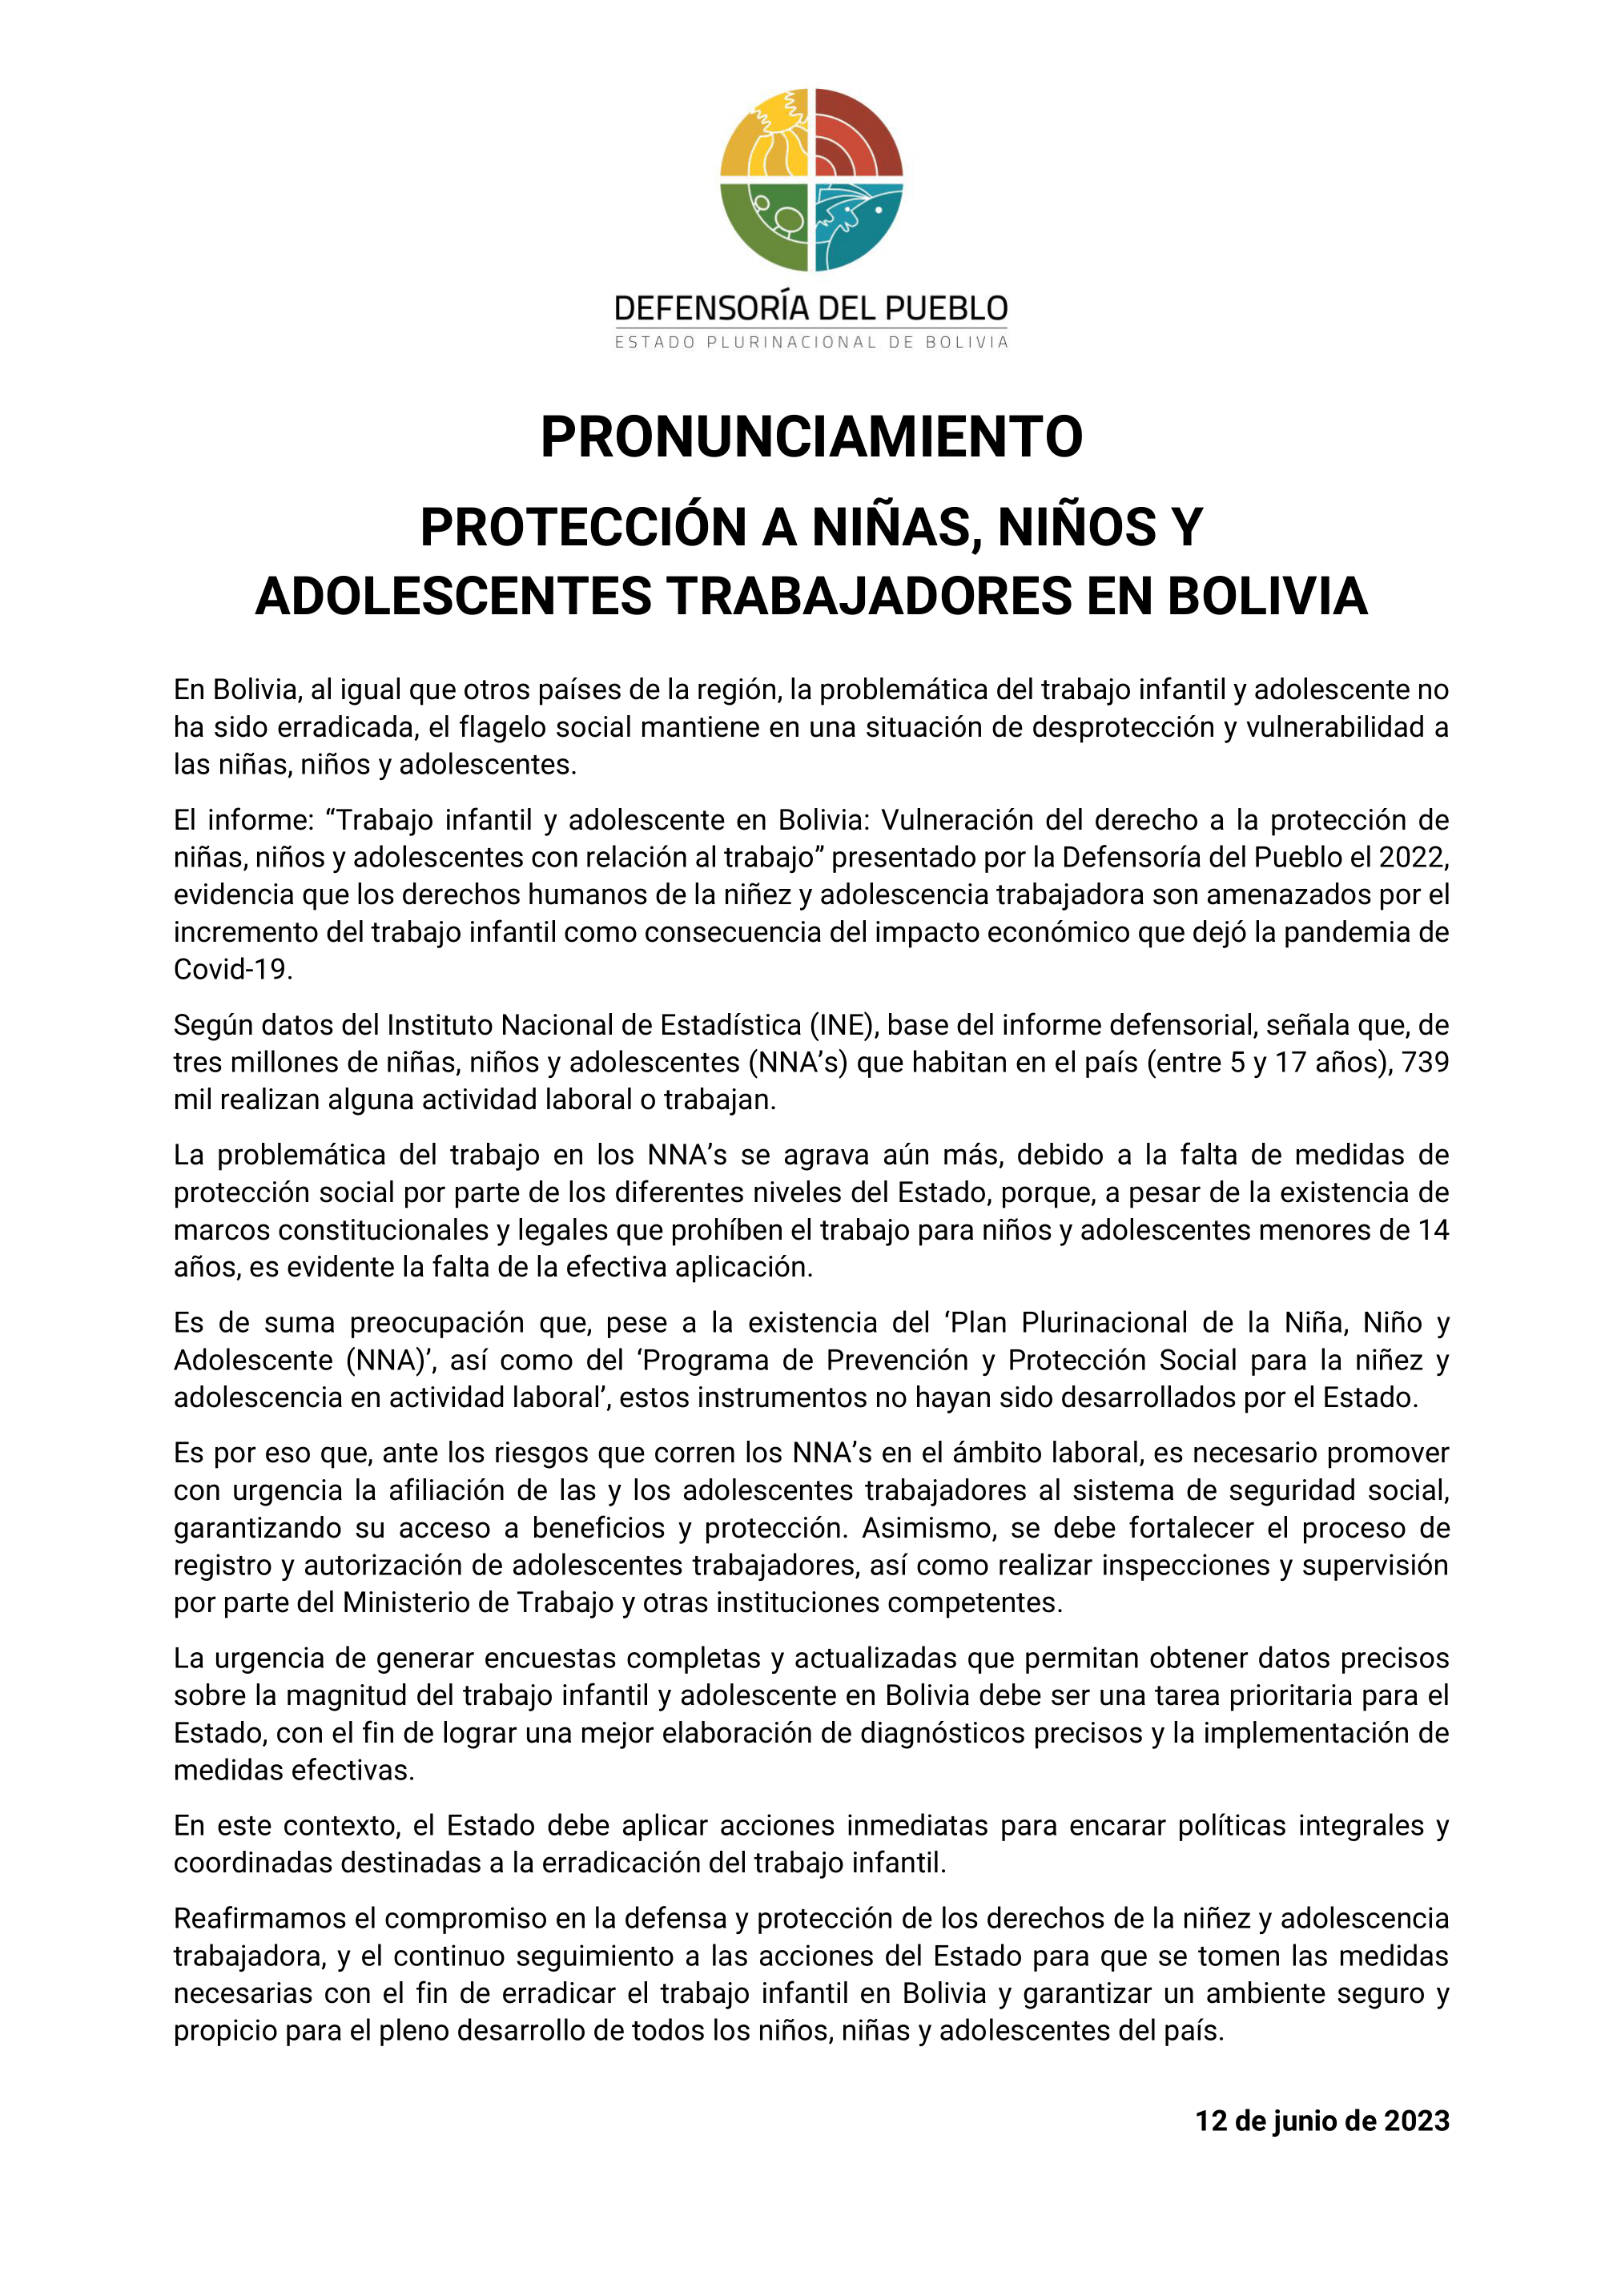 PROTECCIÓN A NIÑAS, NIÑOS Y ADOLESCENTES TRABAJADORES EN BOLIVIA